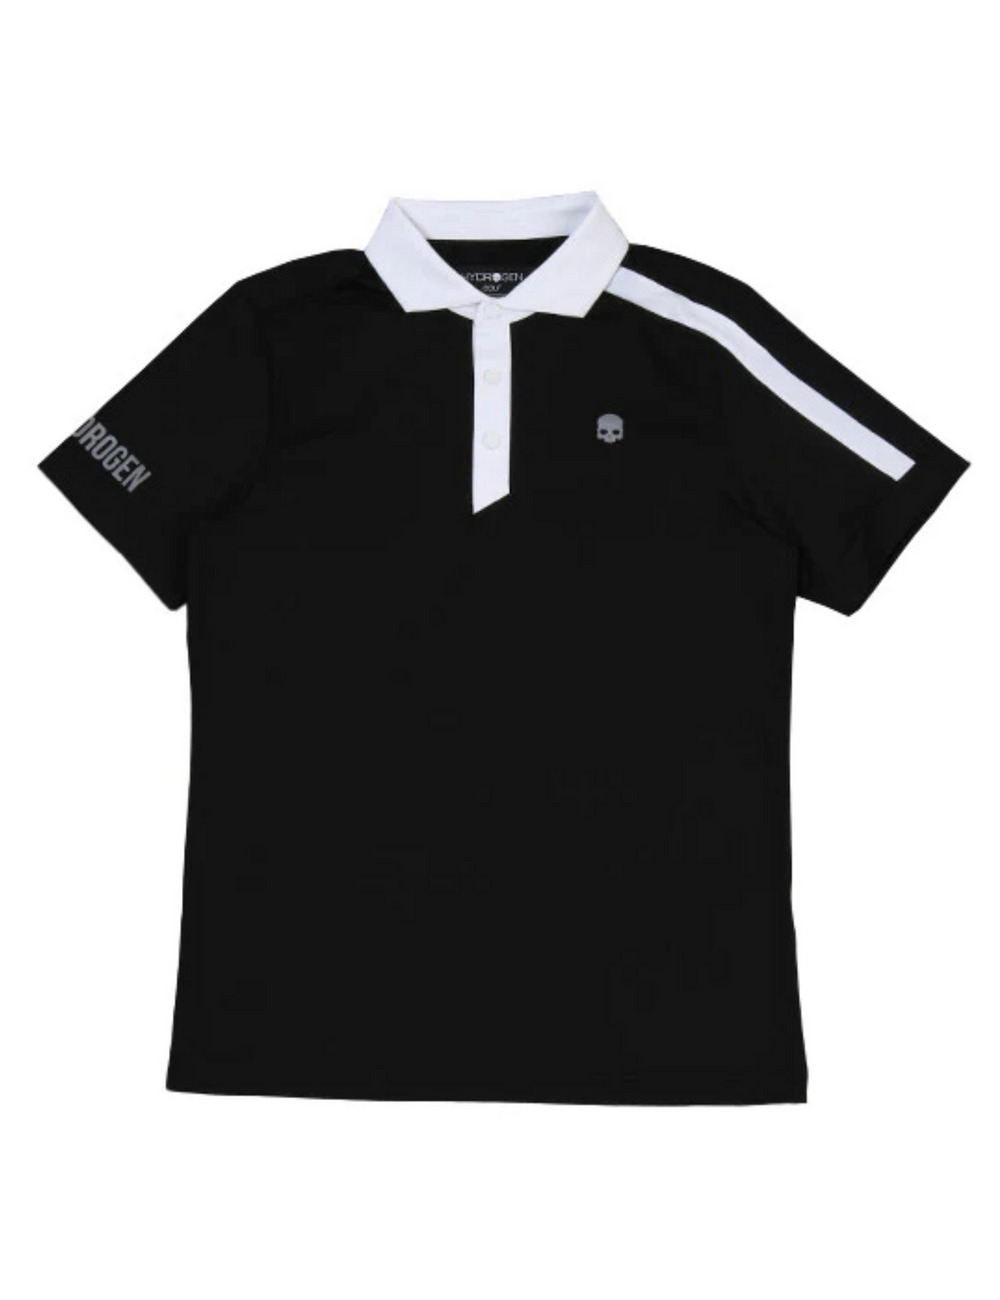 ゴルフポロシャツ(半袖) /GOLF POLO SS 詳細画像 ブラック 1